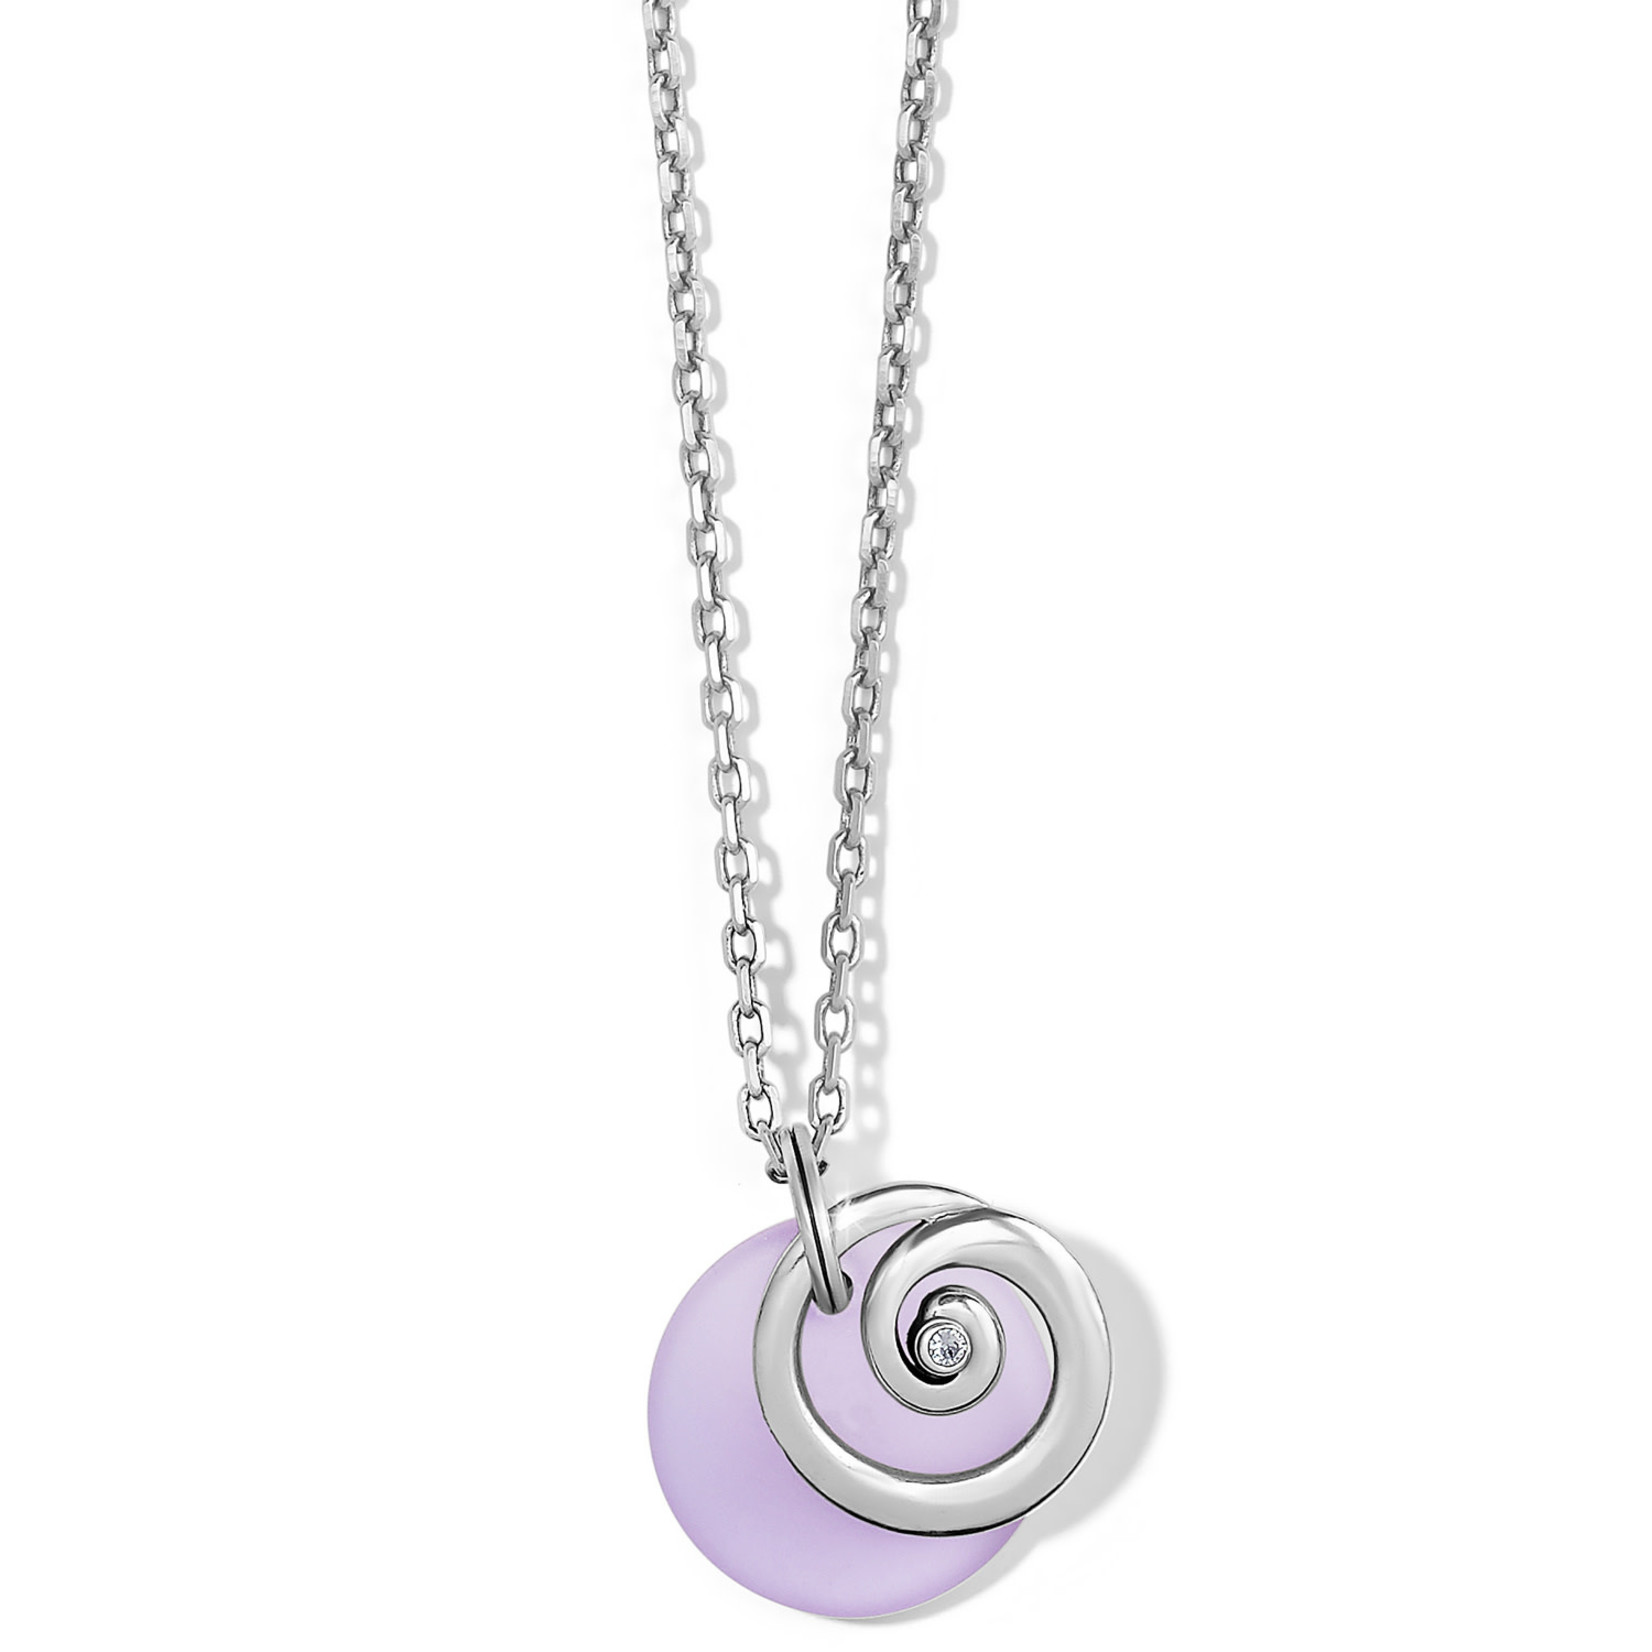 Brighton Contempo Glass Candy Necklace in Purple